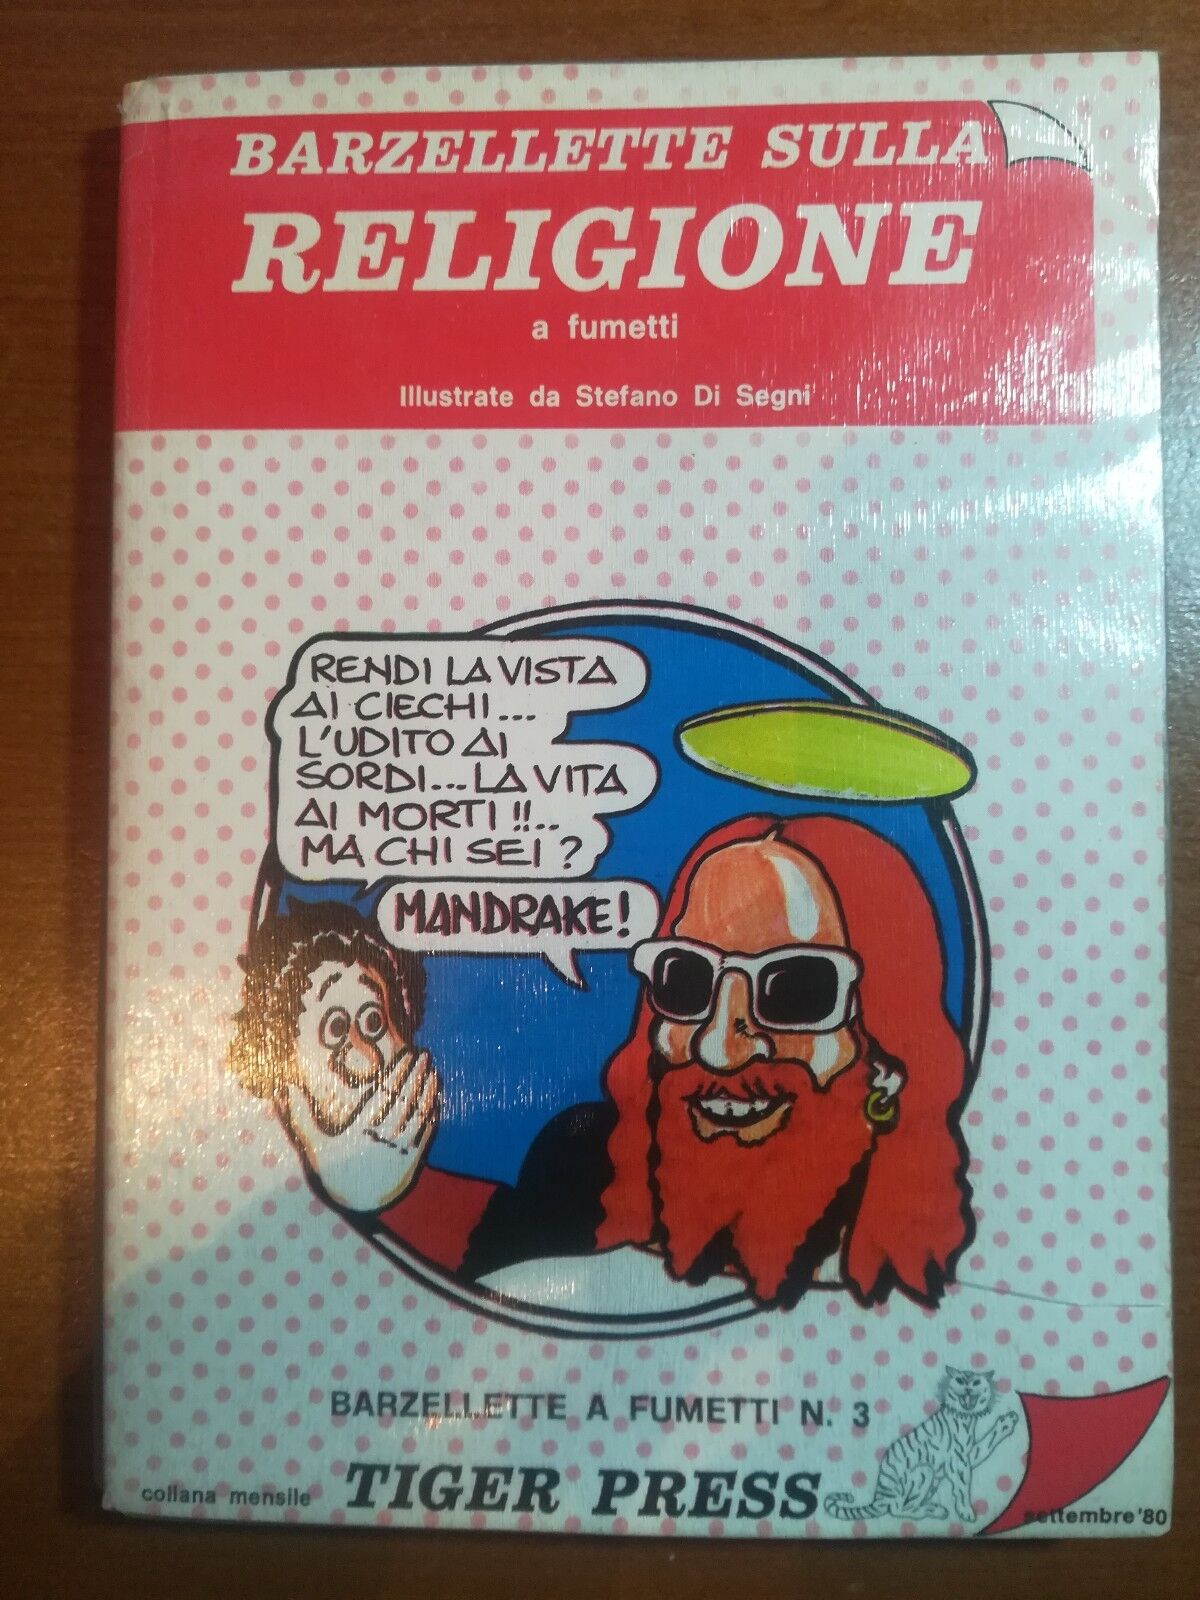 Barzellette sulla religione - Stefano Di Segni - Tiger Press - 1980 - M